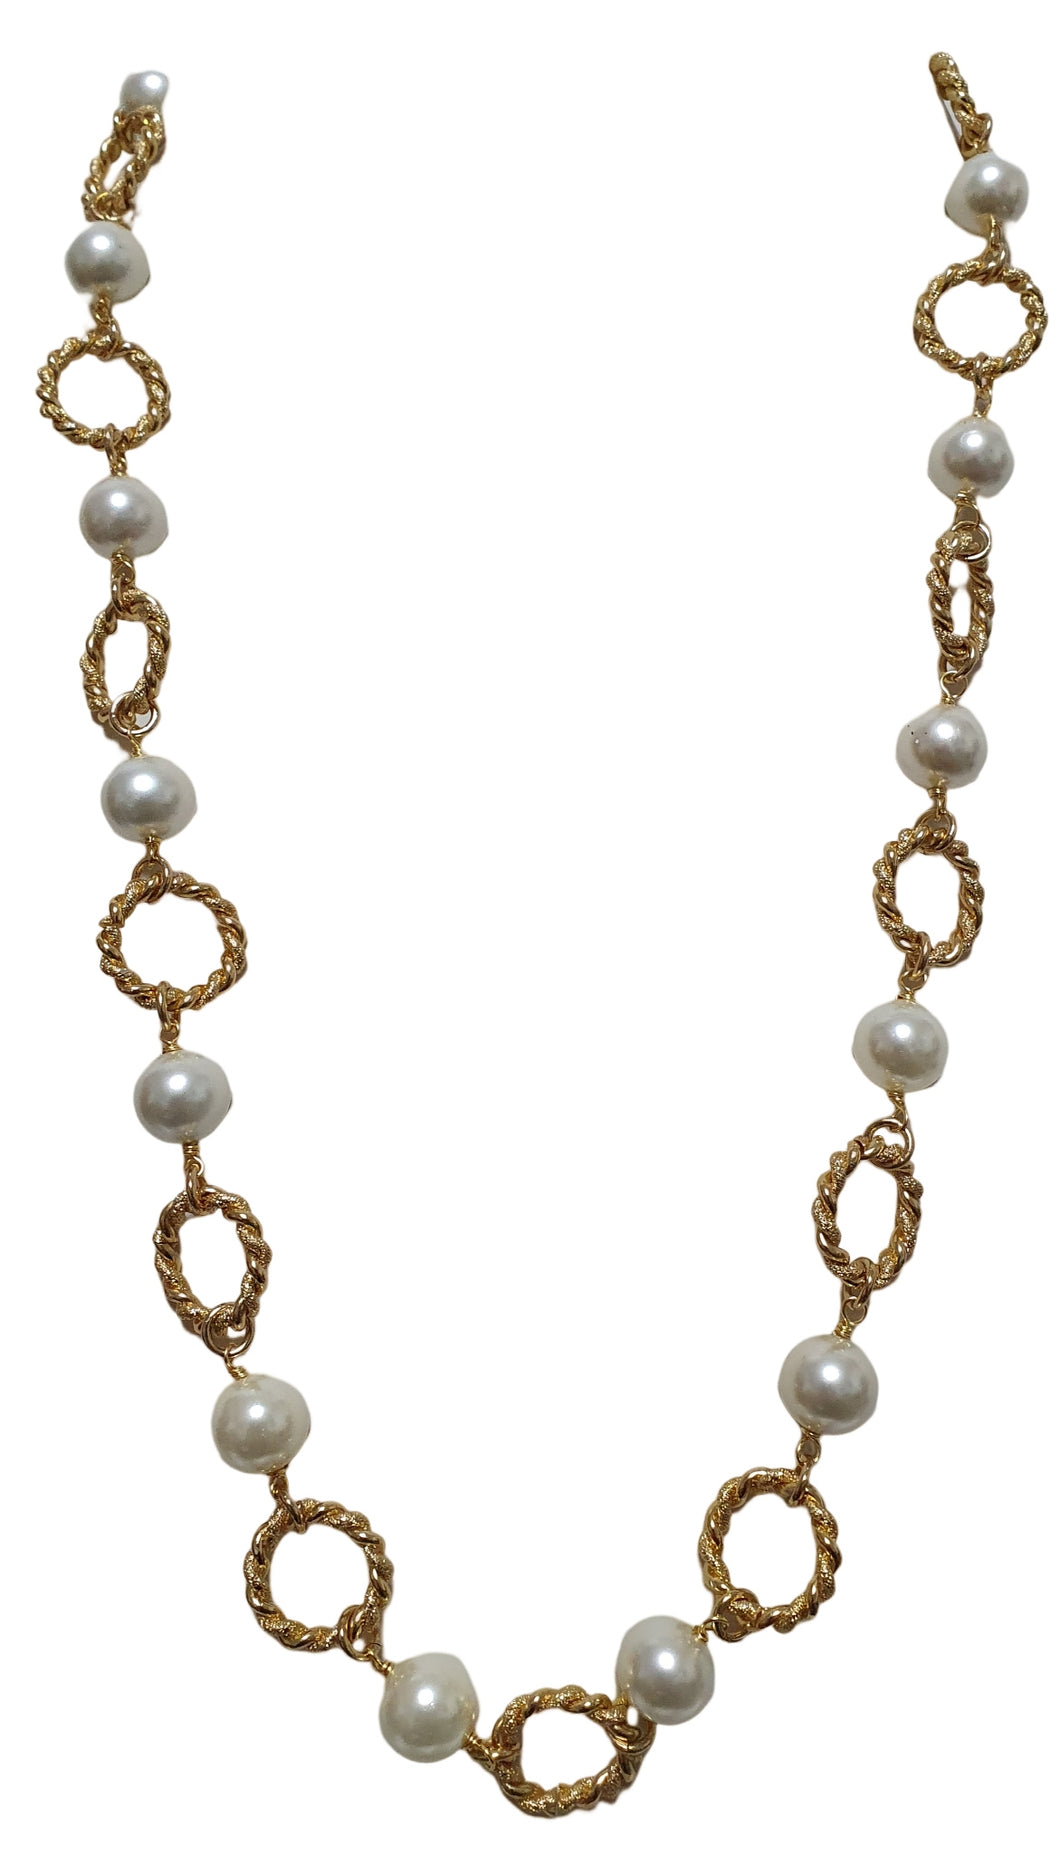 Perlenkette 2 Fäden mit Zentralmit zirkon pavé